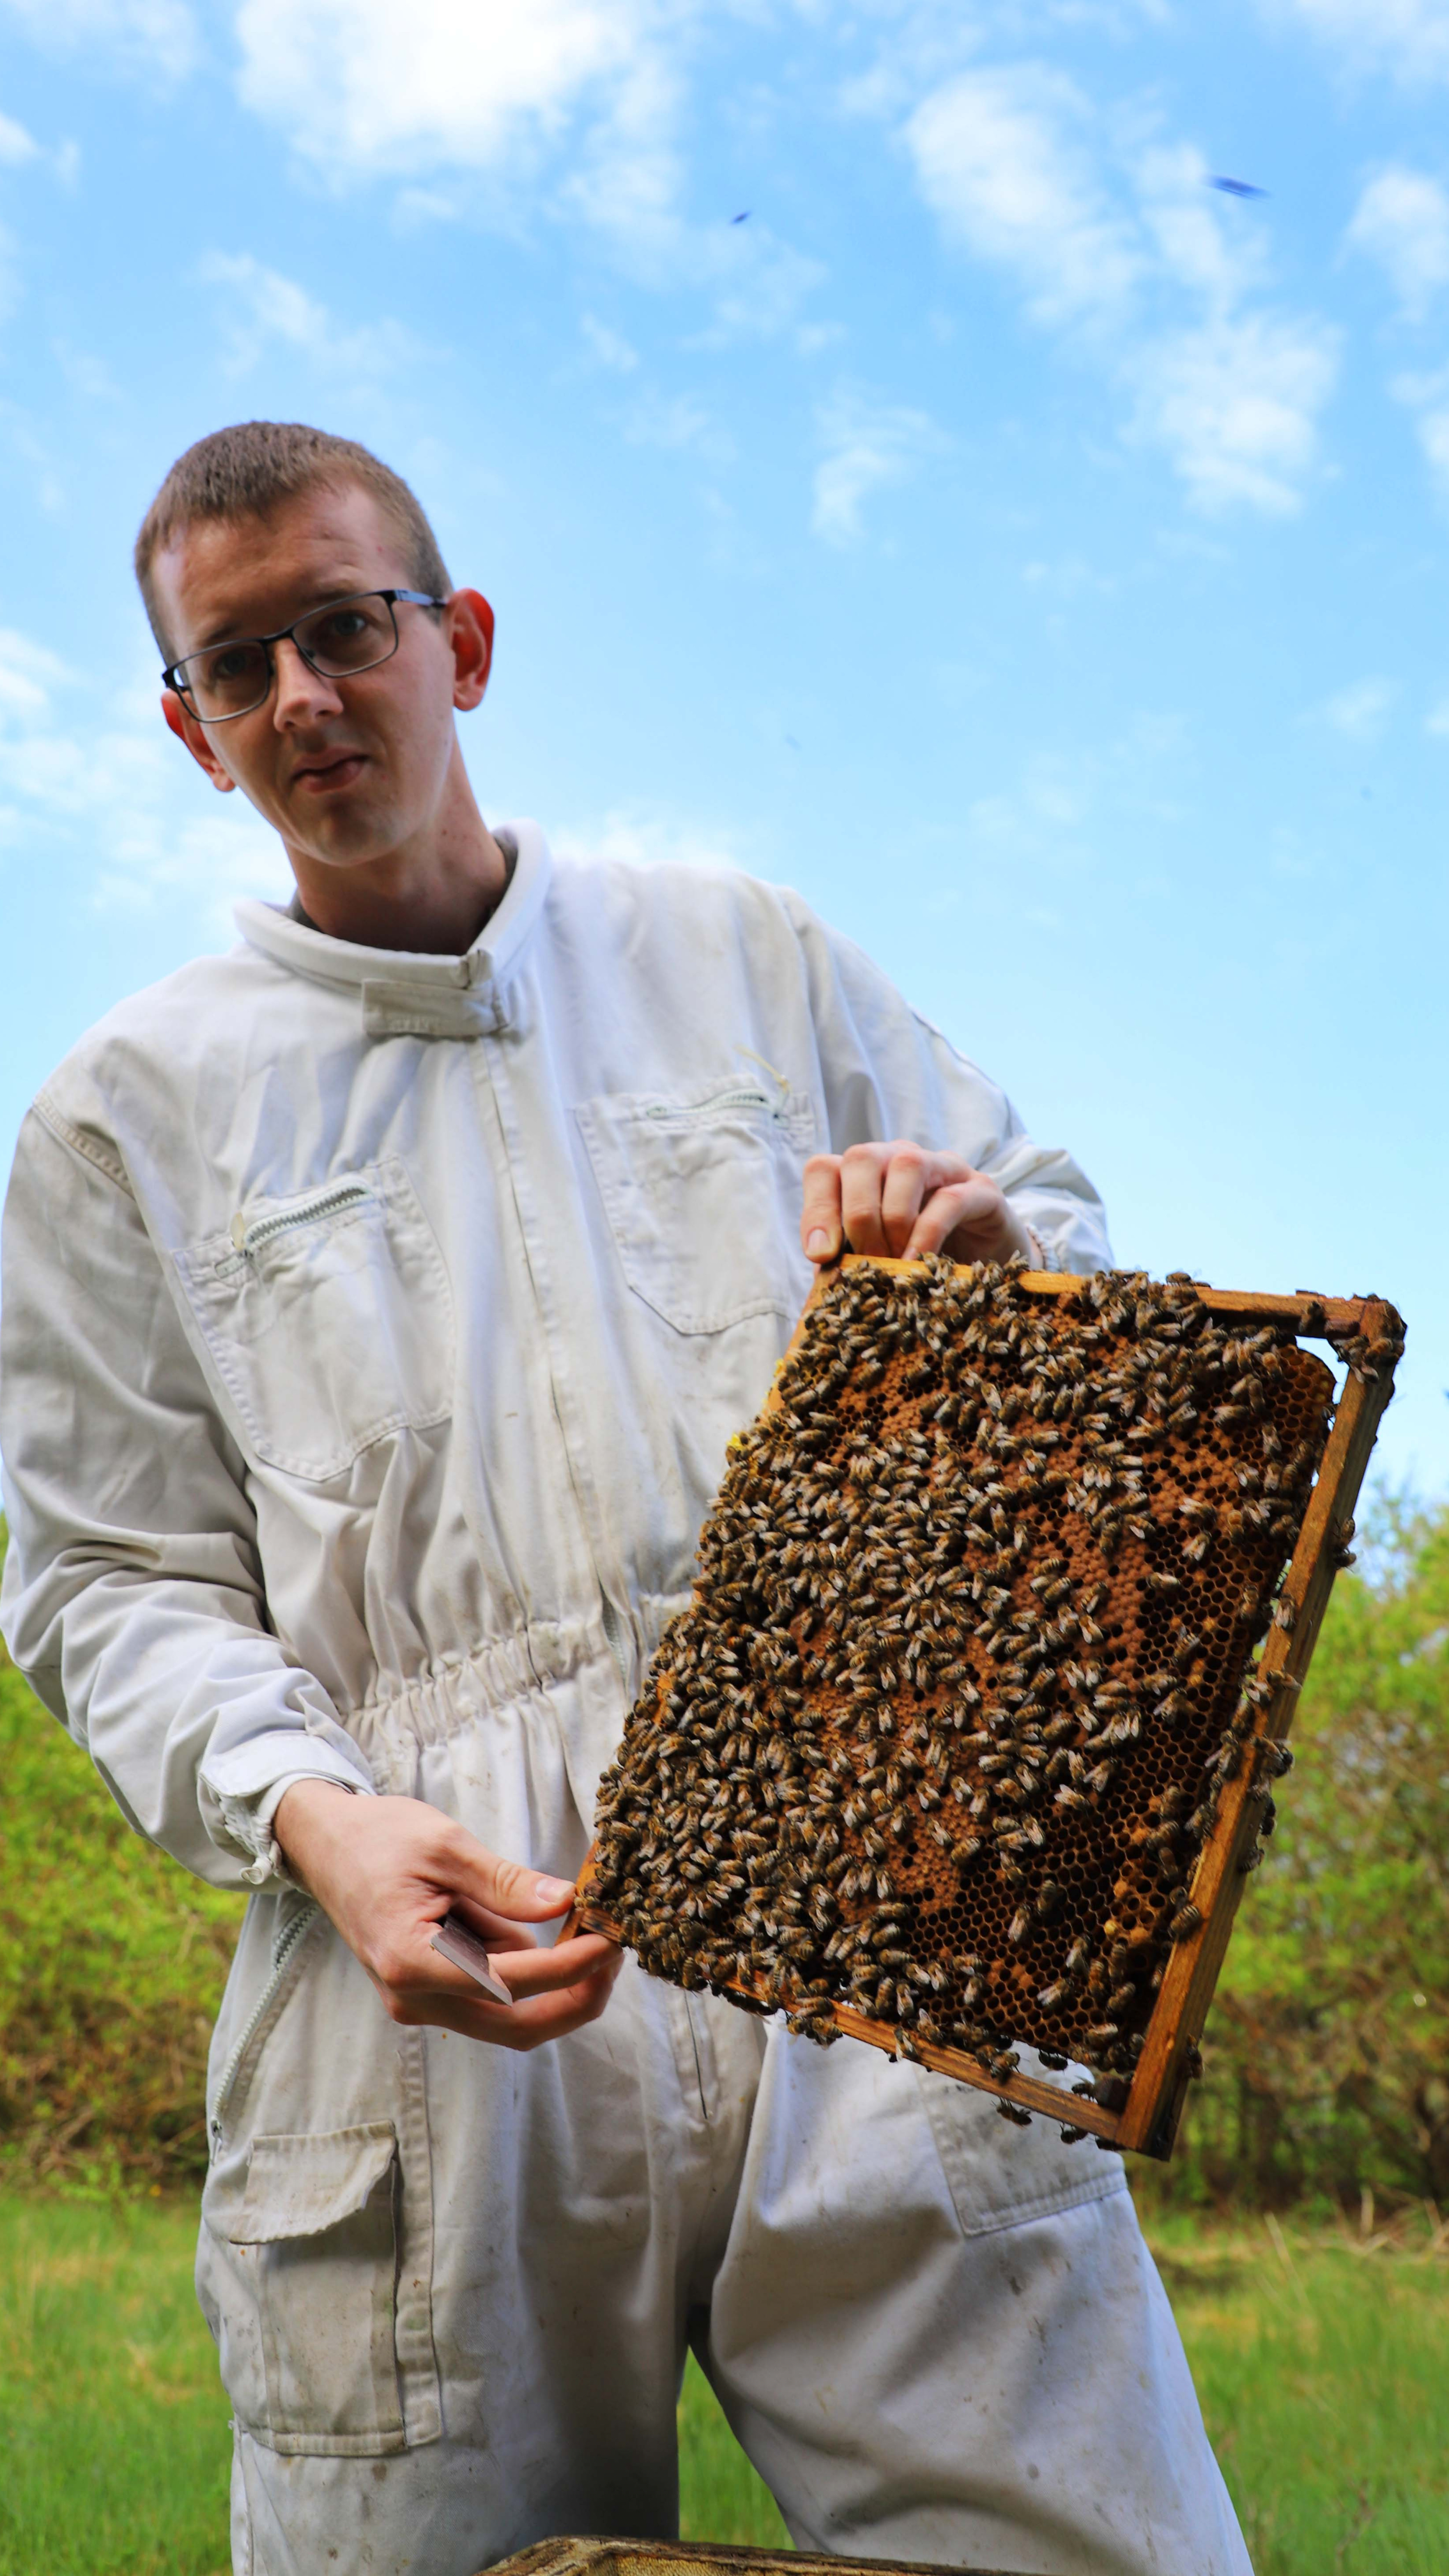 Økologisk honningproducent Mathias Hvam oplever ofte at være skydeskive i en usaglig diskussion for eller imod honningbier. Derfor glæder han sig til, at der nu bliver lavet videnskabelige fakta